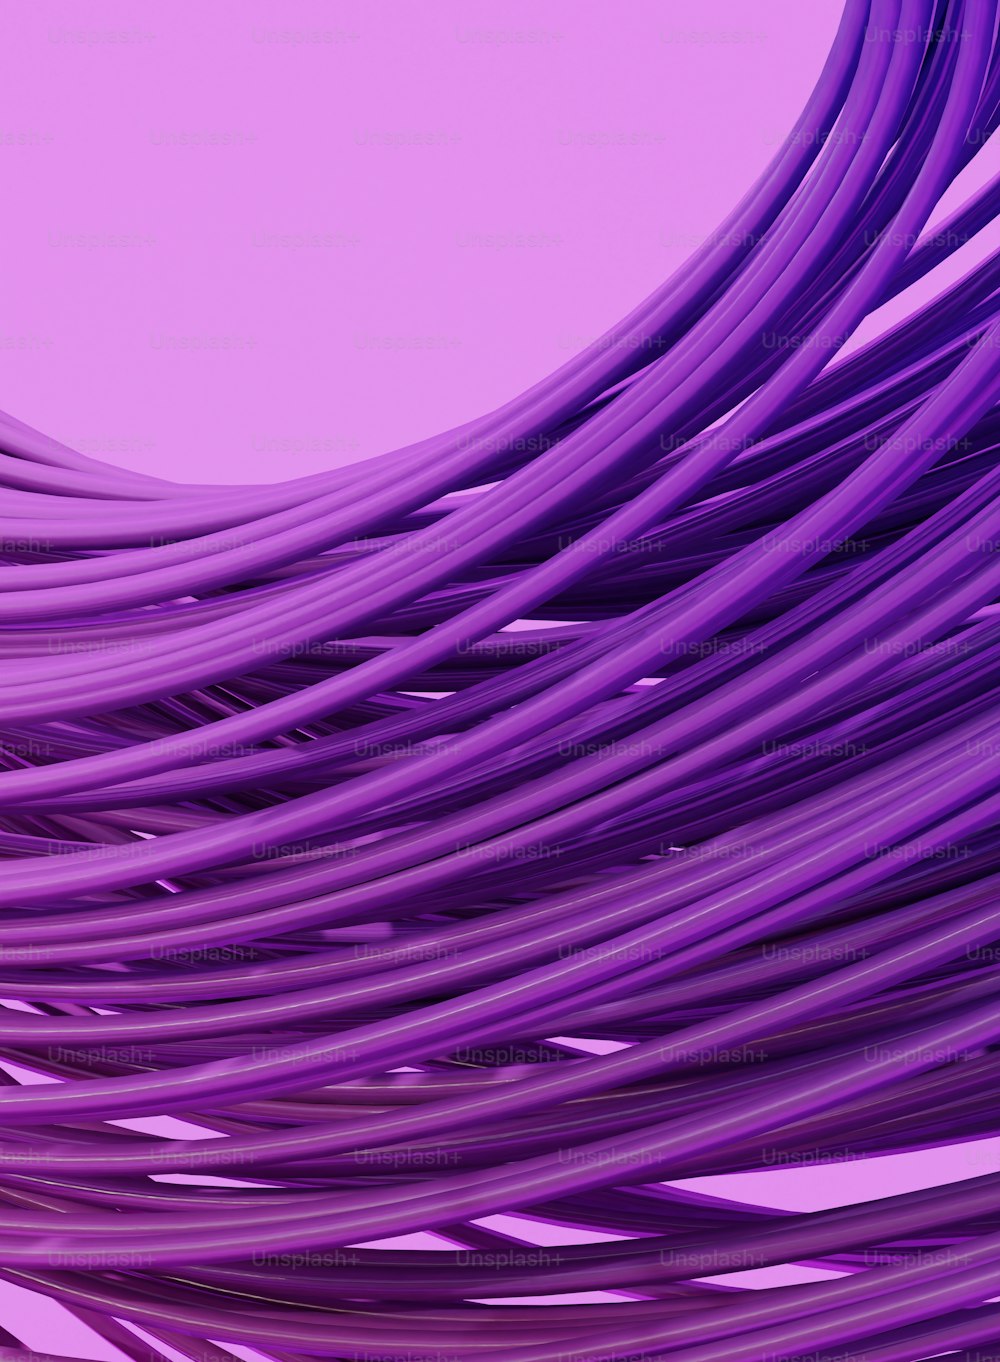 un tas de fils violets sur fond violet